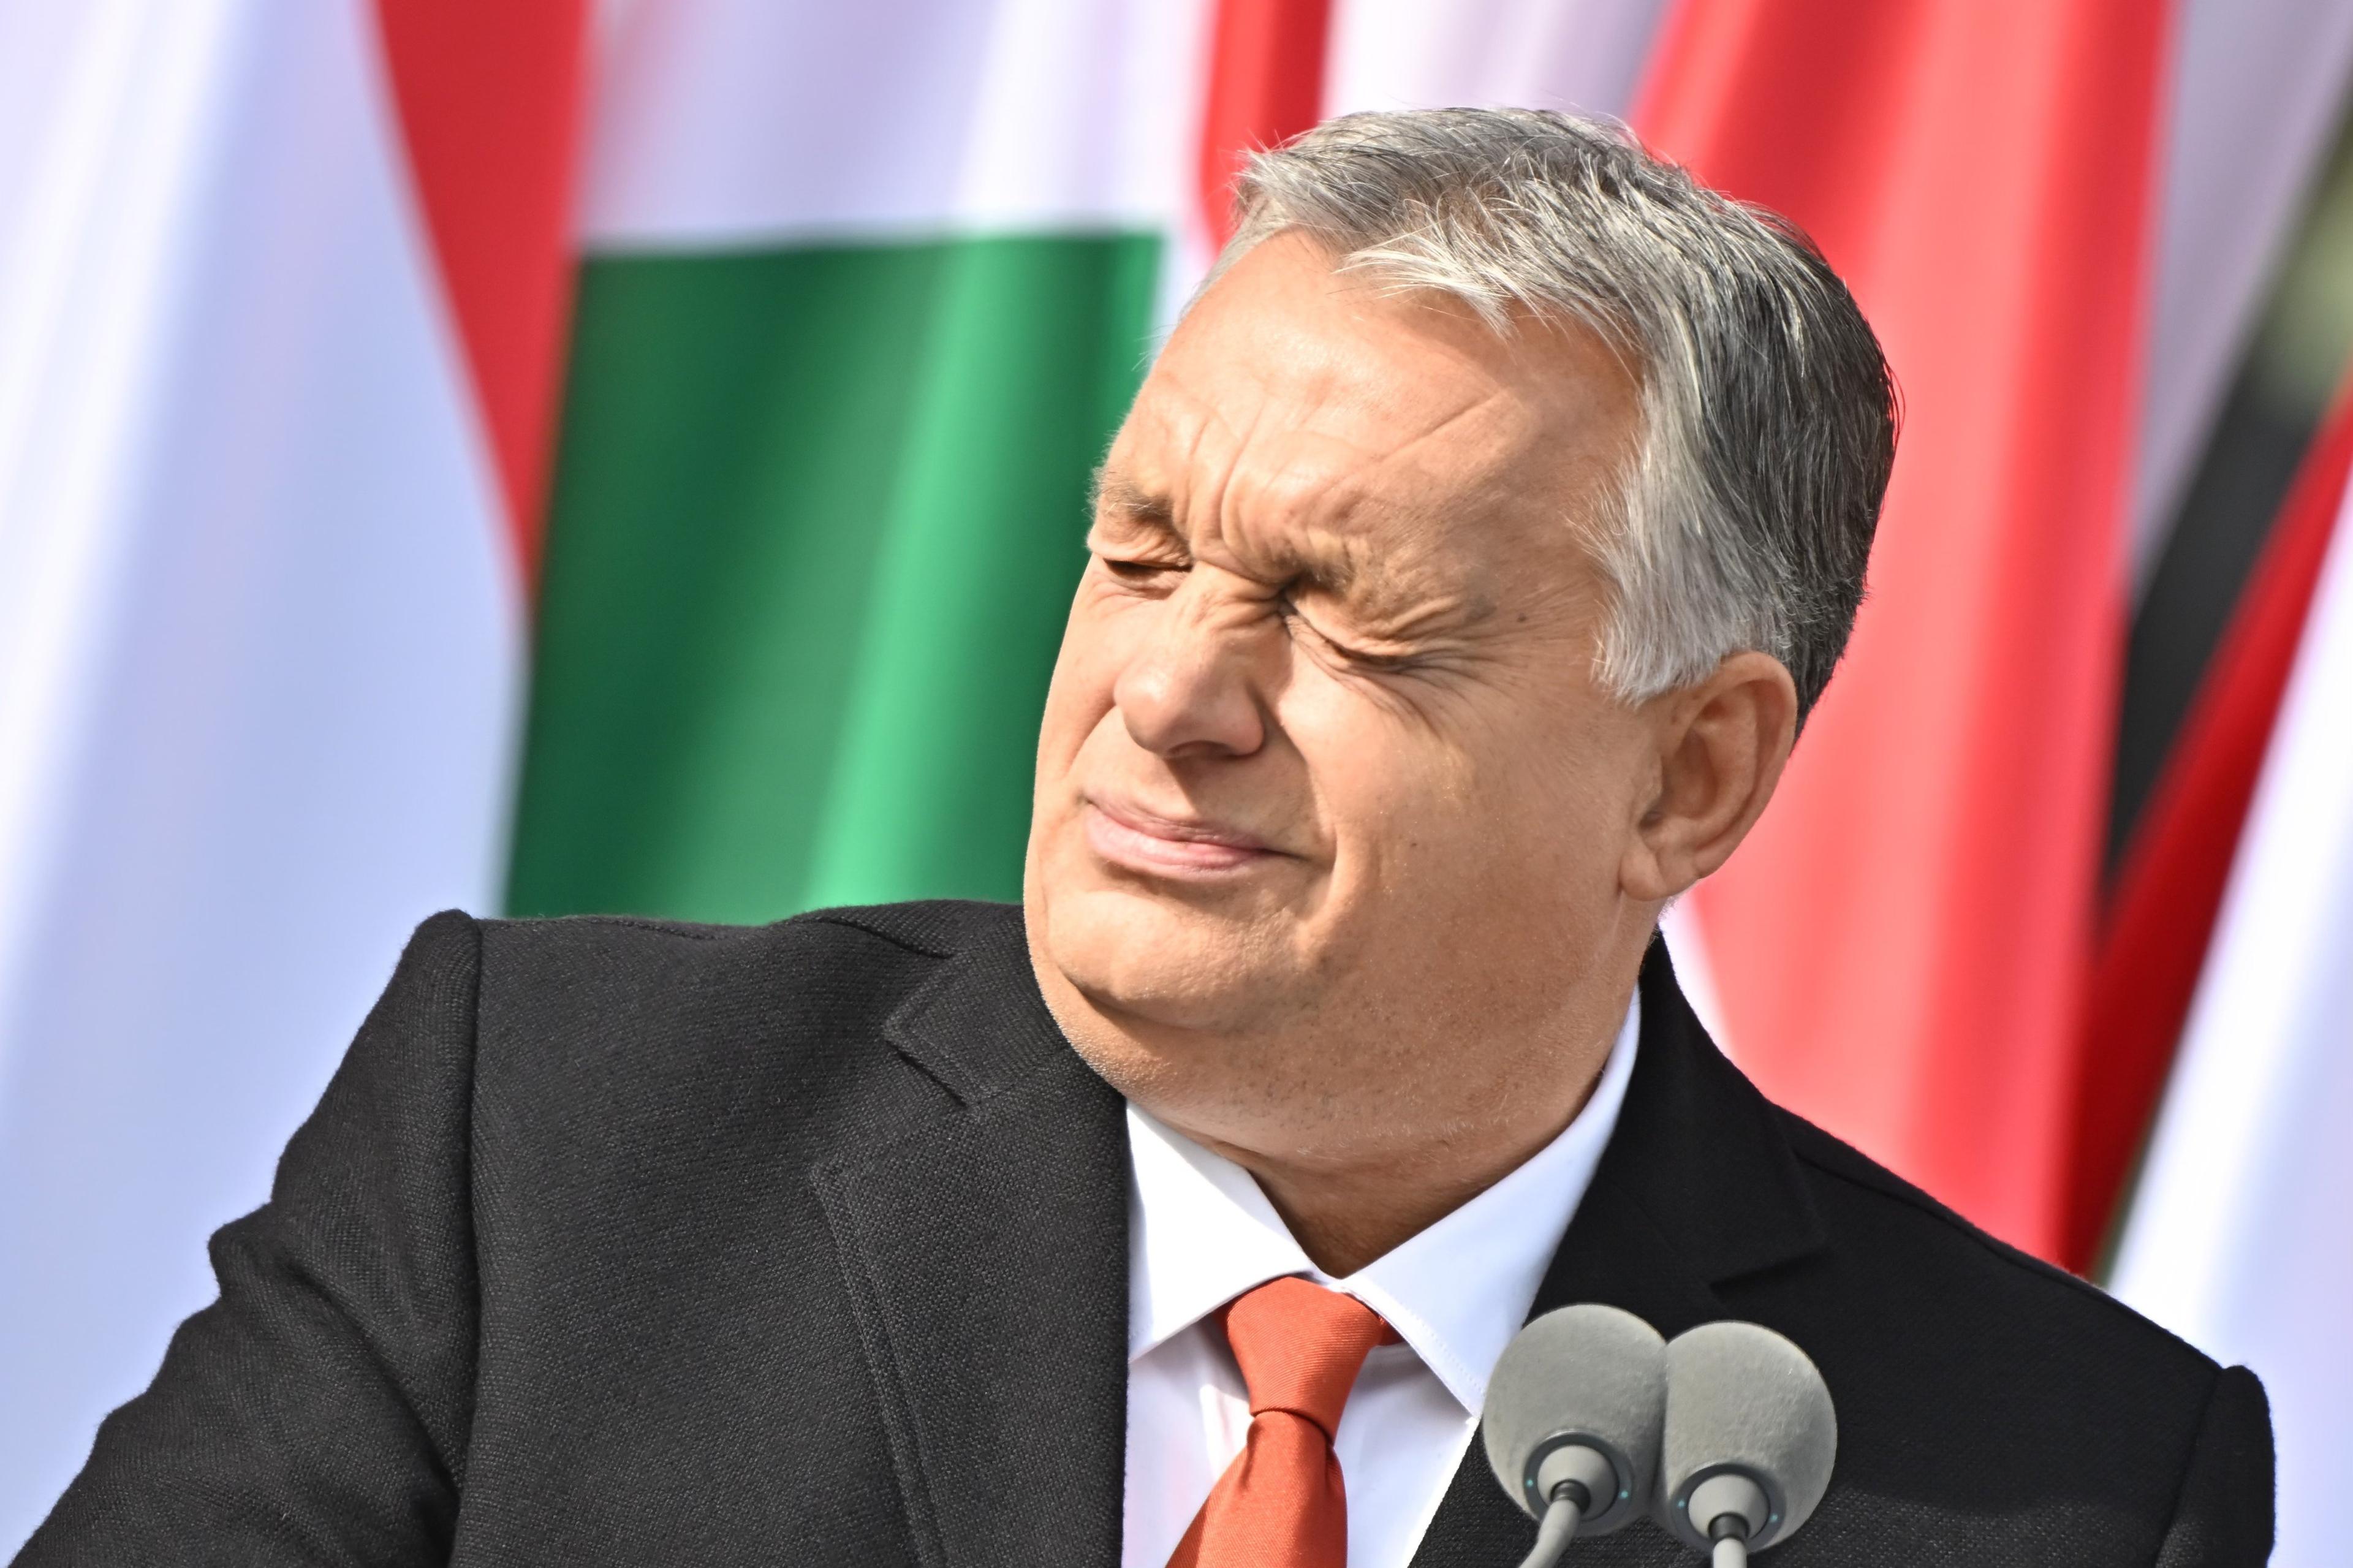 Viktor Orban krzywi się patrząc pod światło. W tle - węgierskie flagi